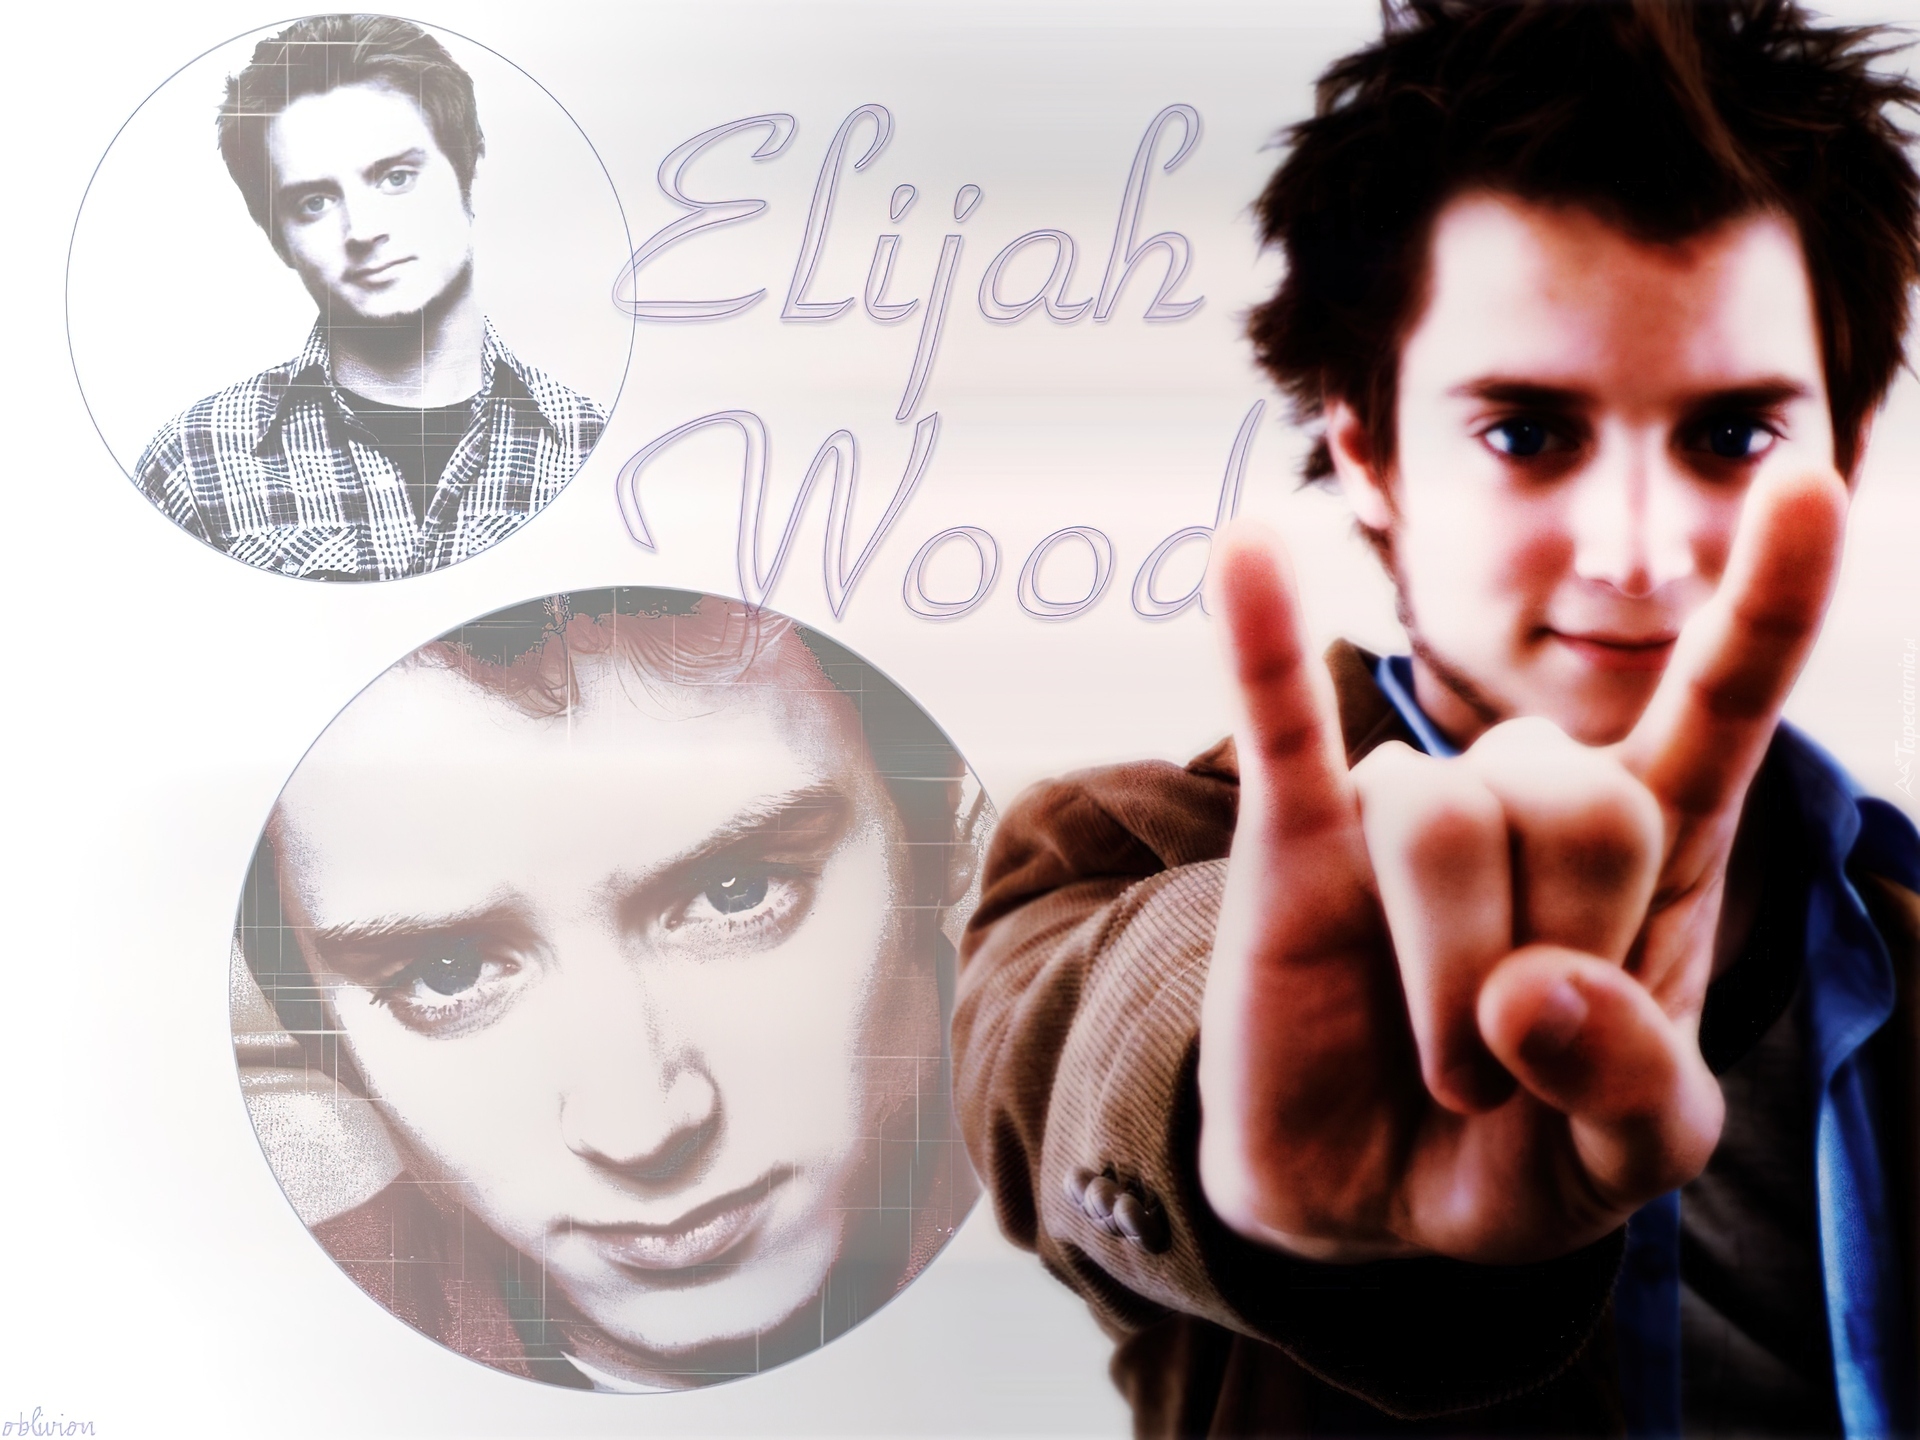 Elijah Wood,ręka, palce